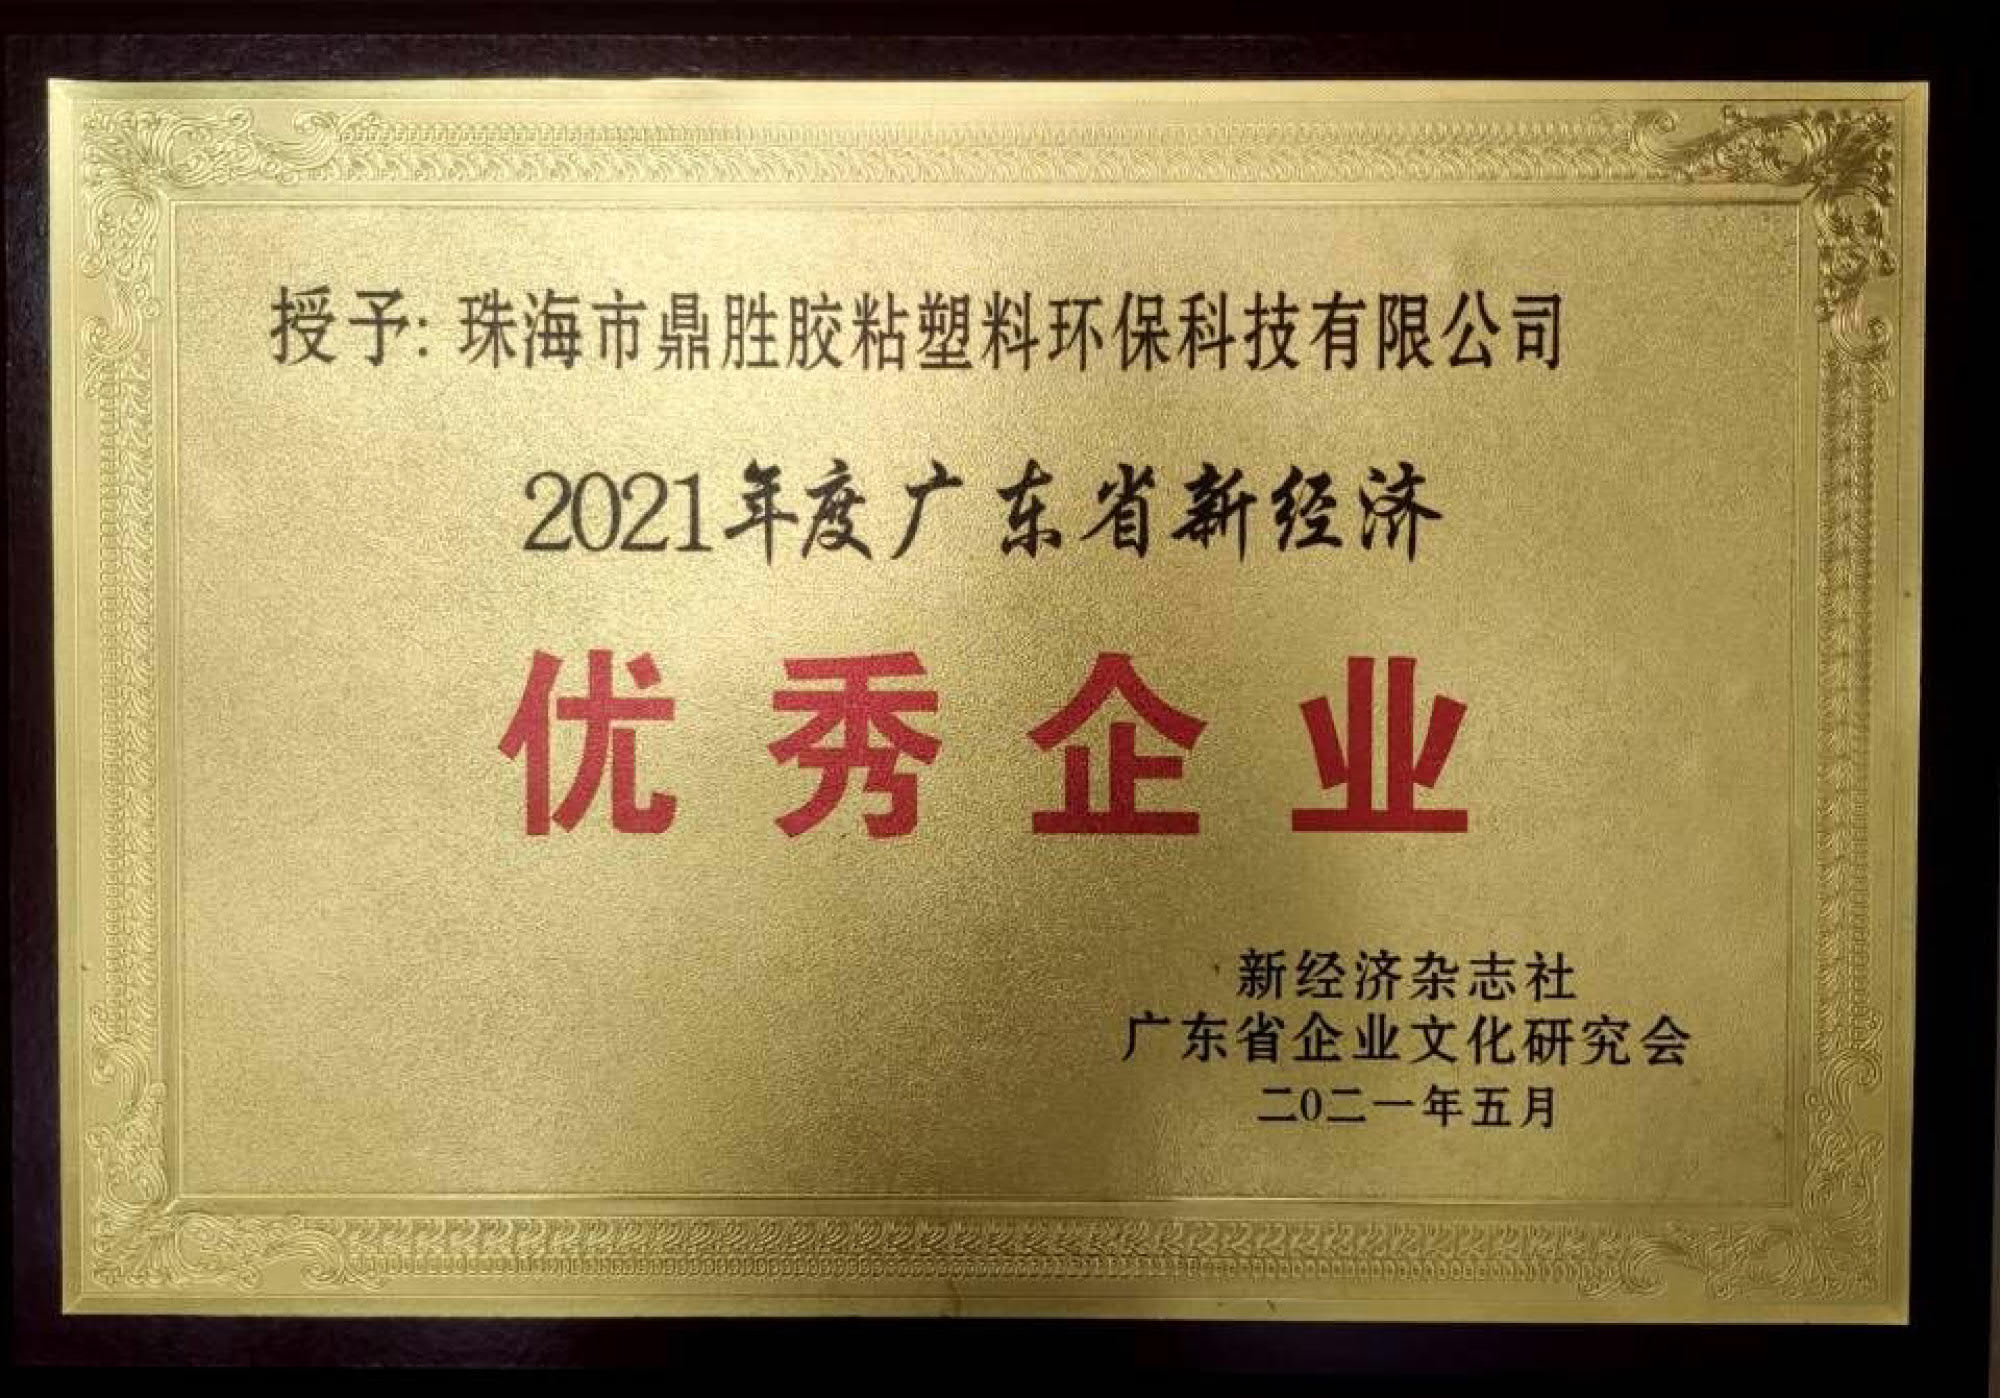 榮獲2021年度廣東省新經濟企業